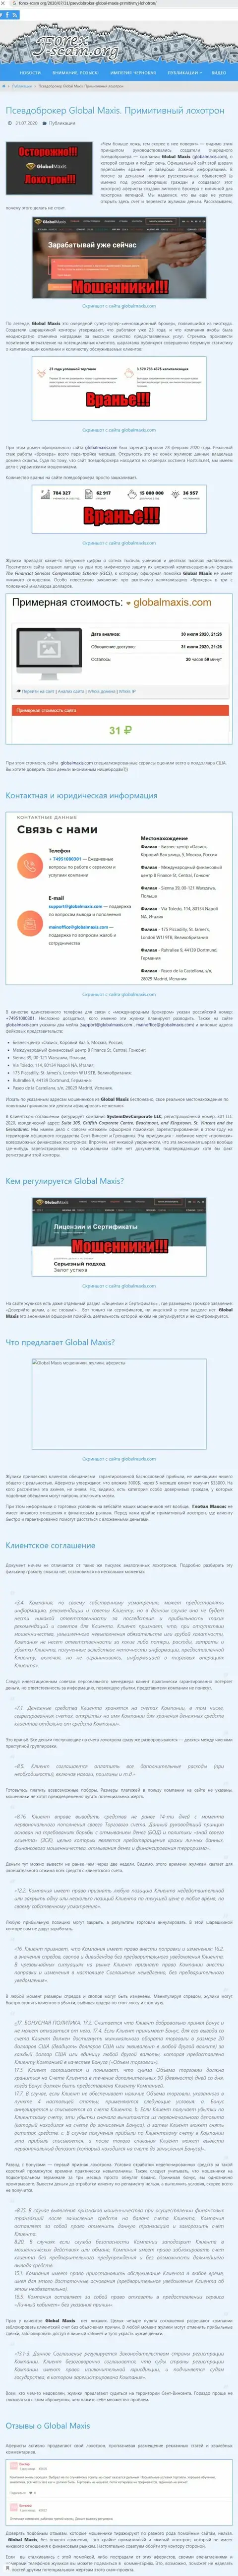 ЖУЛЬНИЧЕСТВО, СЛИВ и ВРАНЬЕ - обзор мошеннических действий компании Глобал Максис